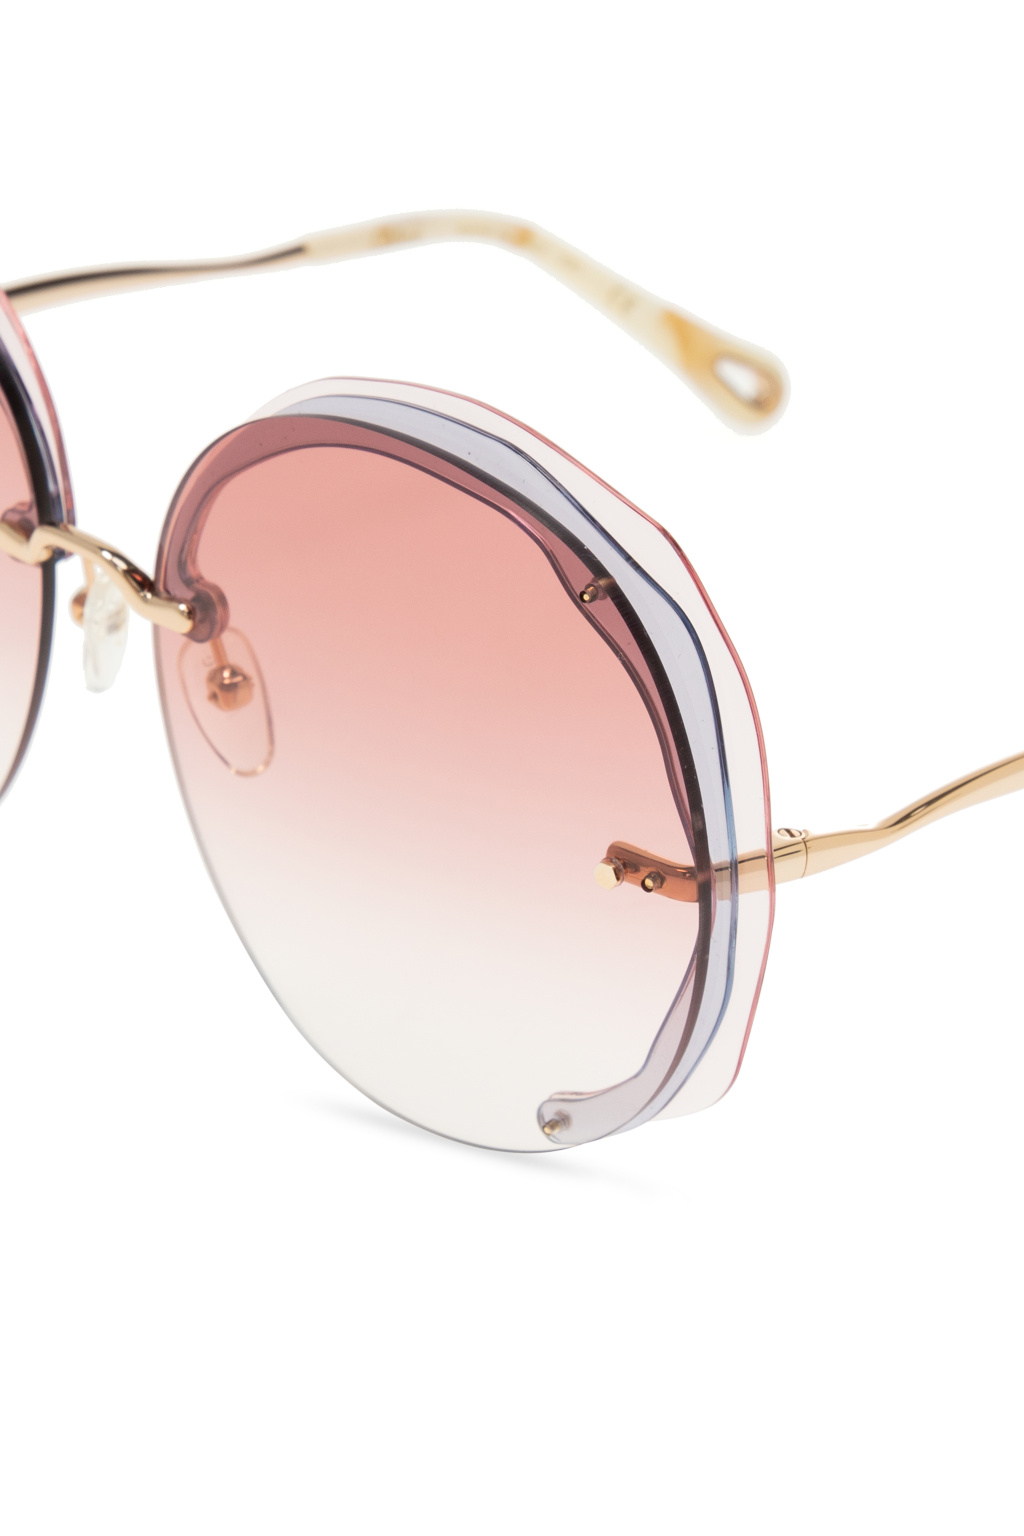 Chloé Dans M01 cat-eye frame sunglasses